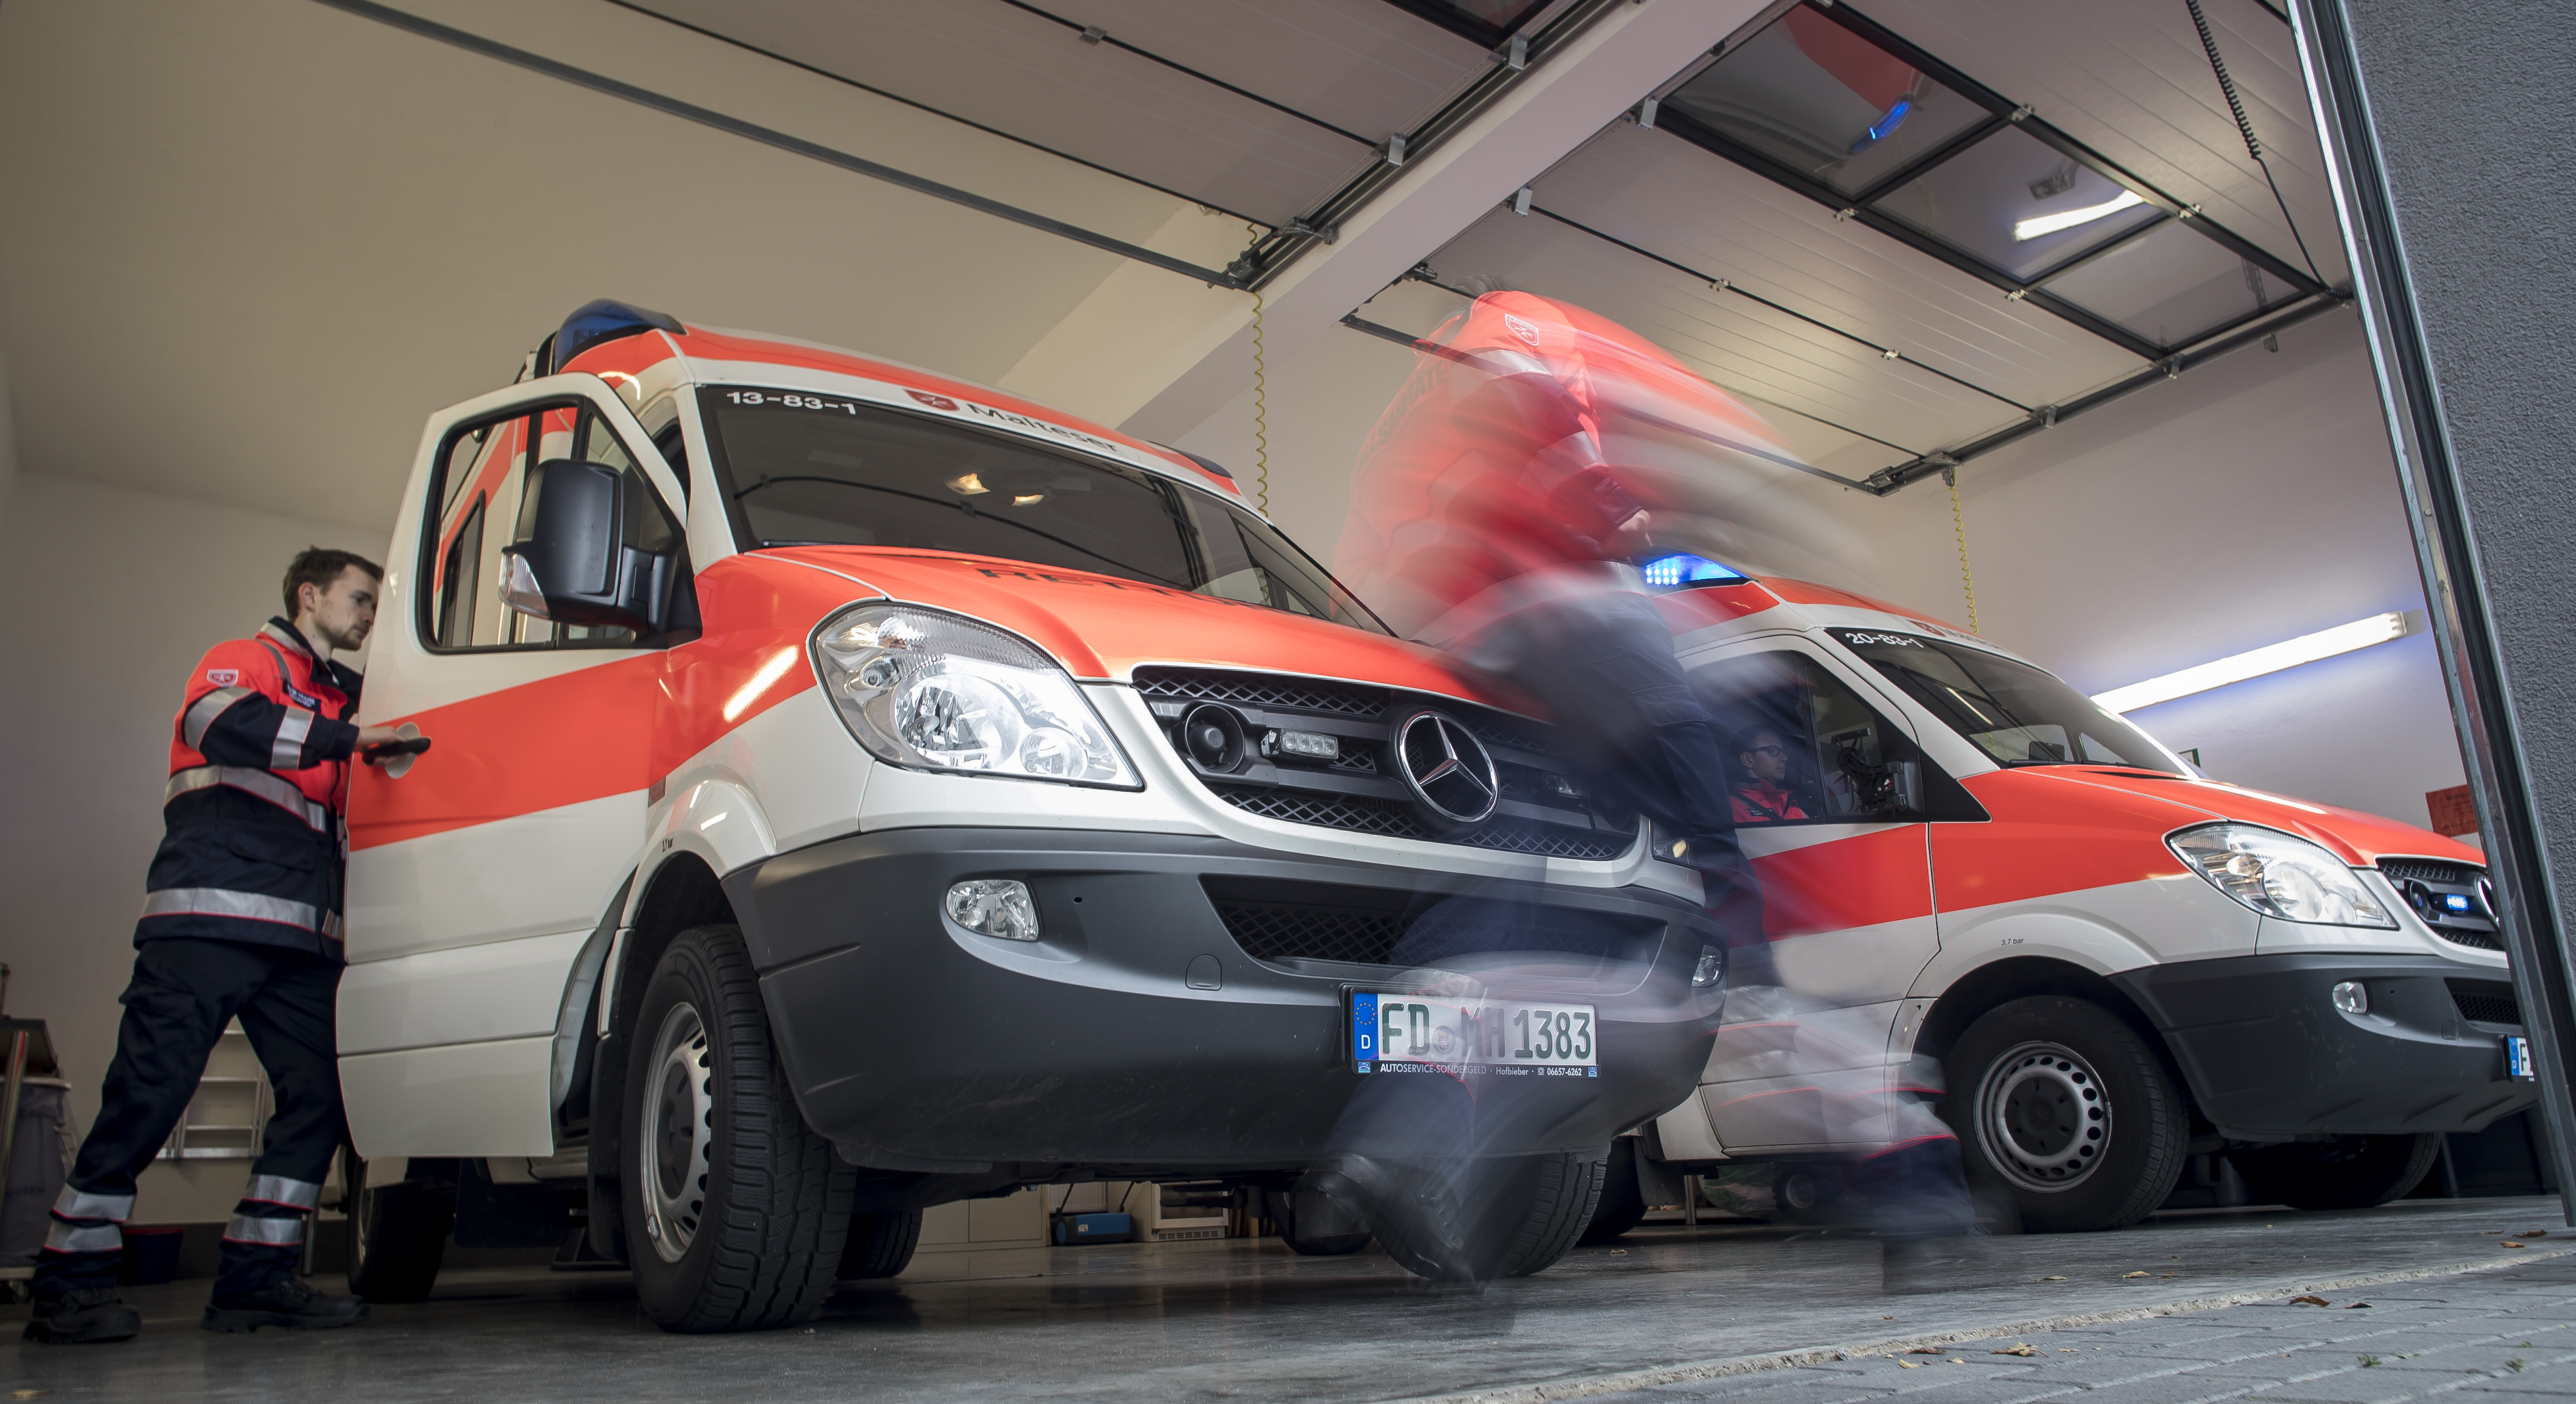 Zwei Mitarbeiter der Malteser sprinten in den Rettungswagen, um zum Einsatz zu fahren.